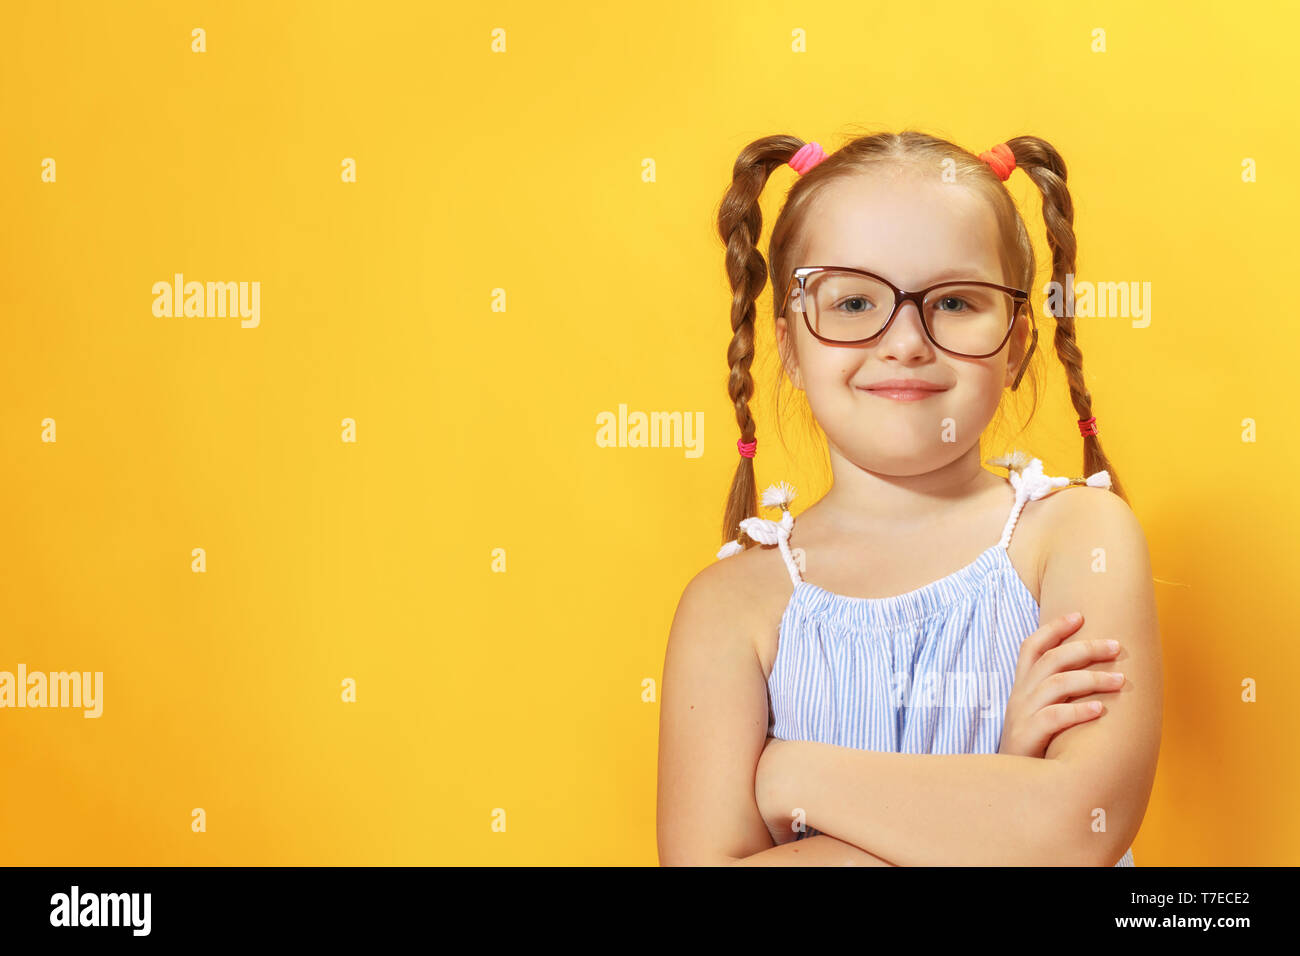 Retrato de una divertida niña de edad preescolar con gafas sobre un fondo amarillo. Foto de stock